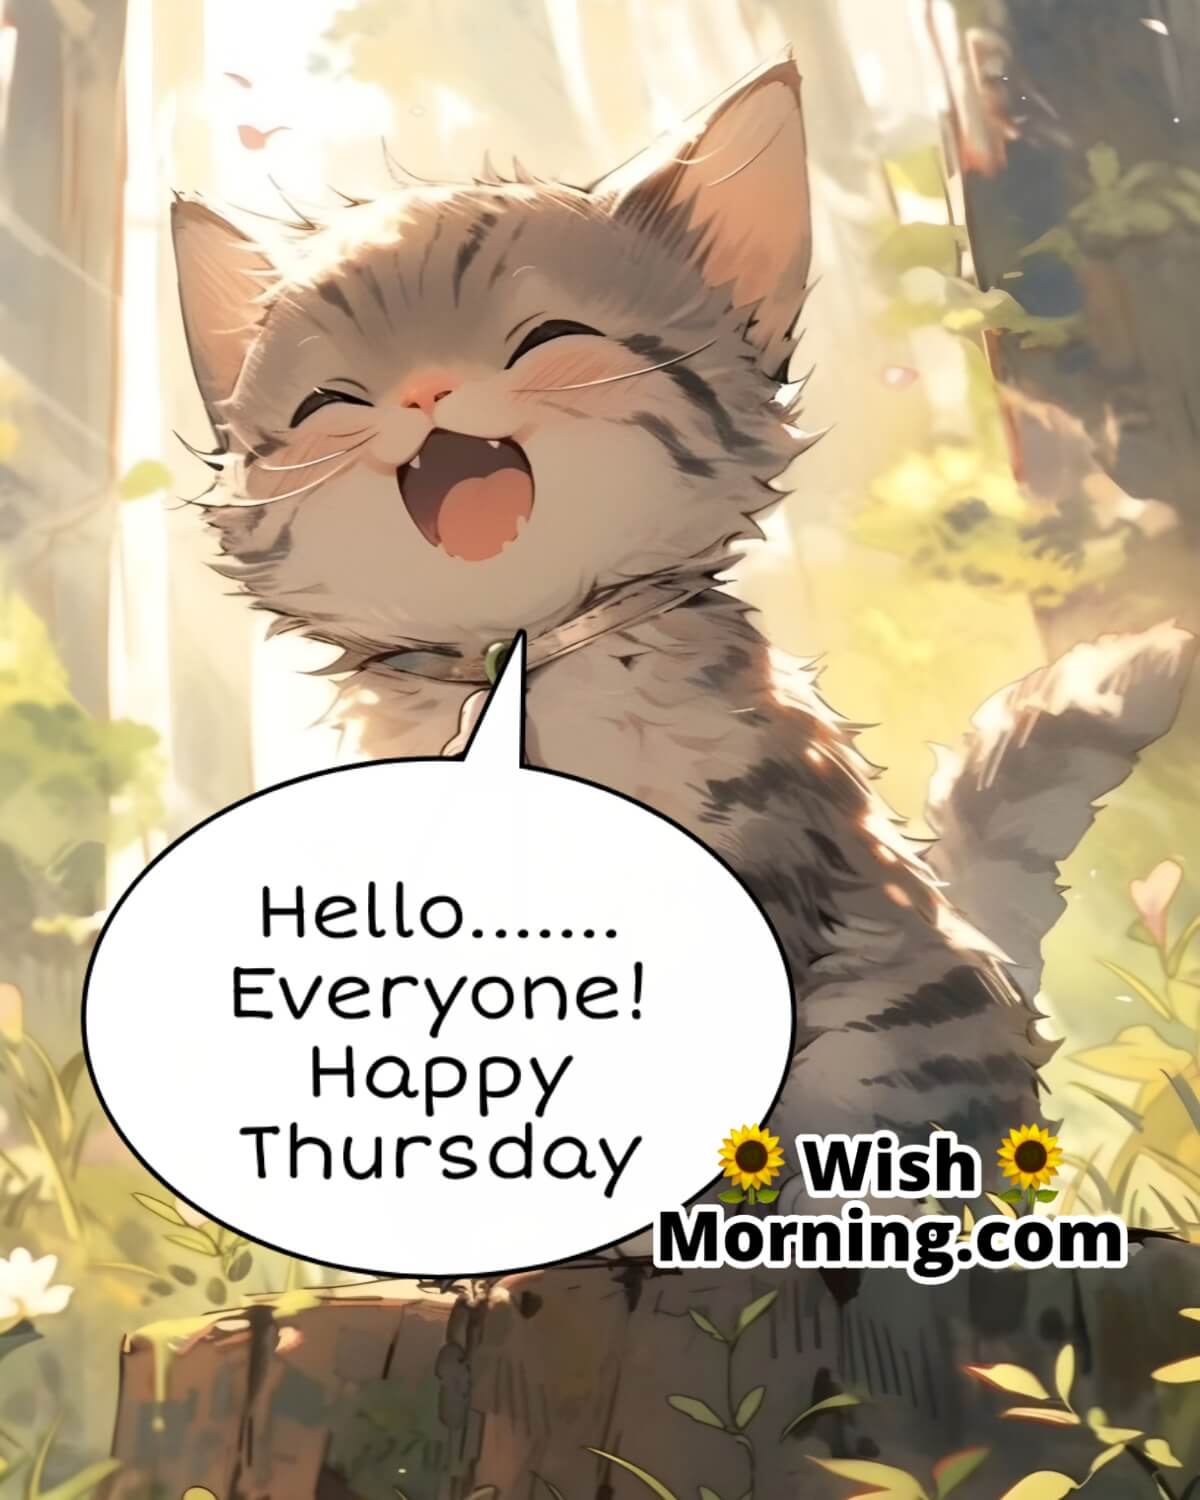 Hello Everyone! Happy Thursday